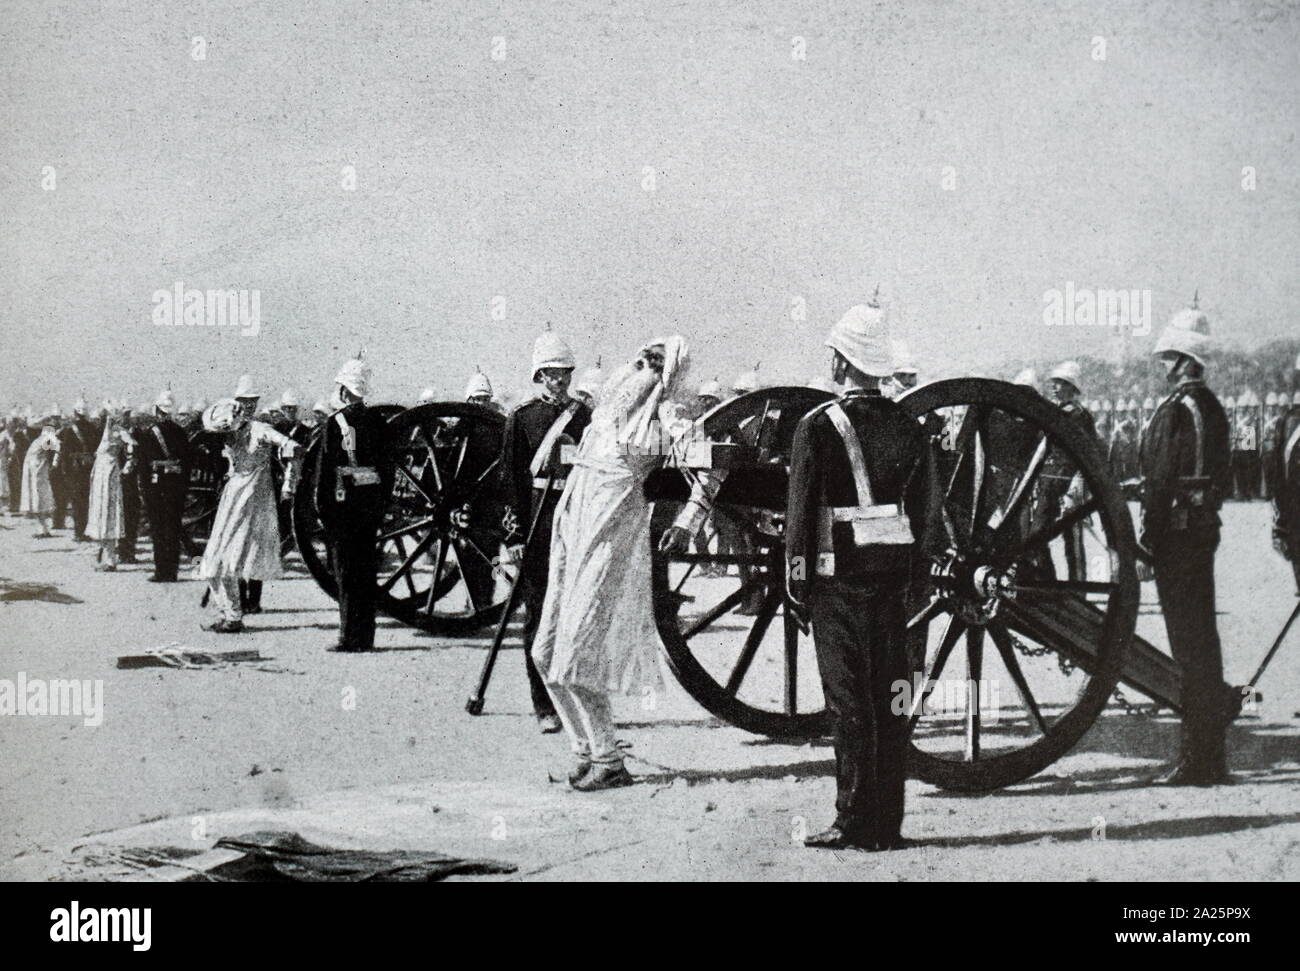 Photographie de l'exécution des cipayes rebelles, de l'Inde sous le Raj britannique Banque D'Images